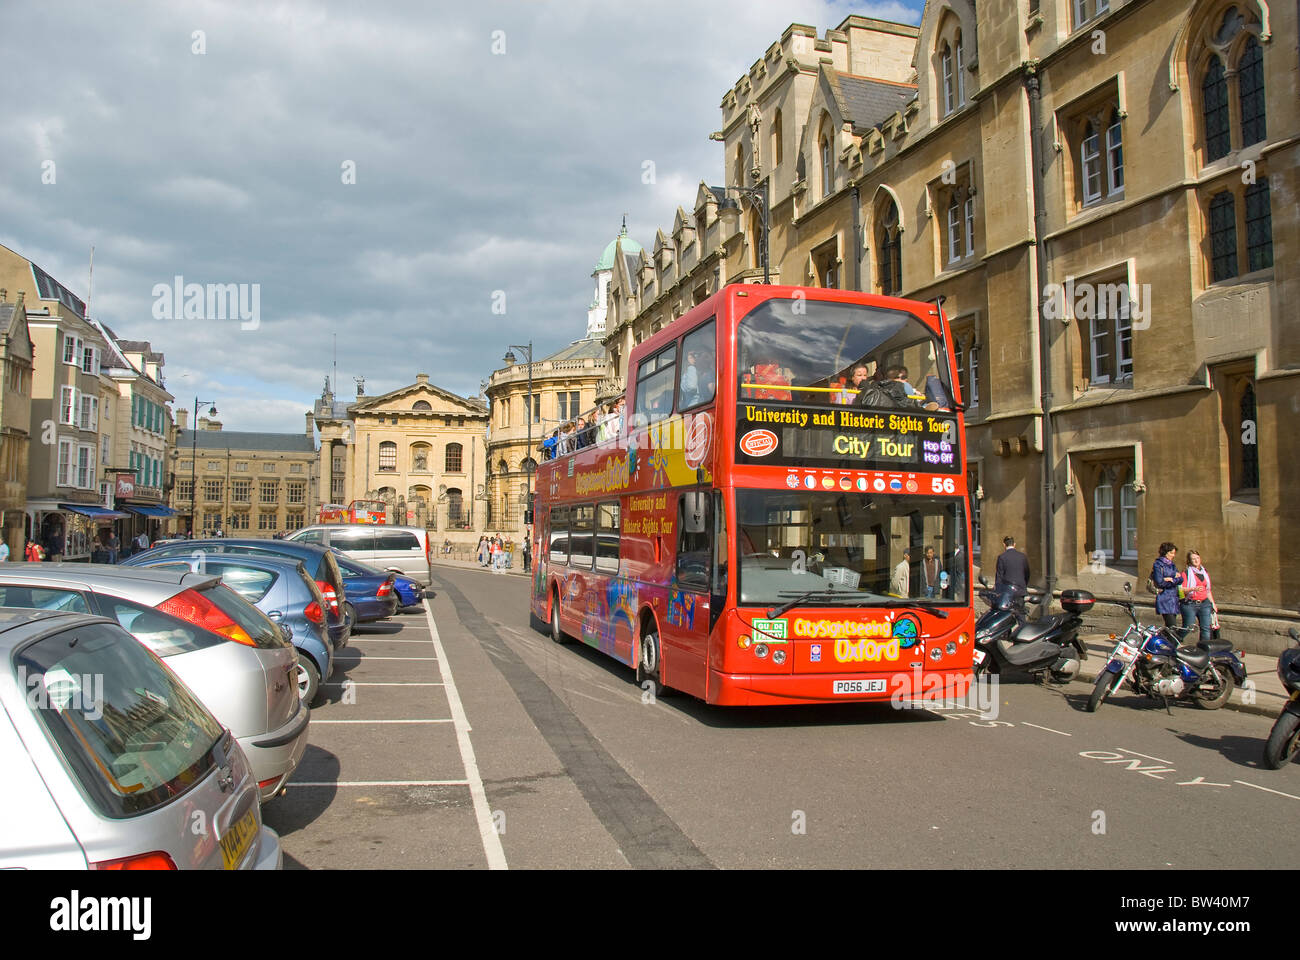 Visite de la ville en bus, centre ville, Oxford, Oxfordshire, England, UK Banque D'Images